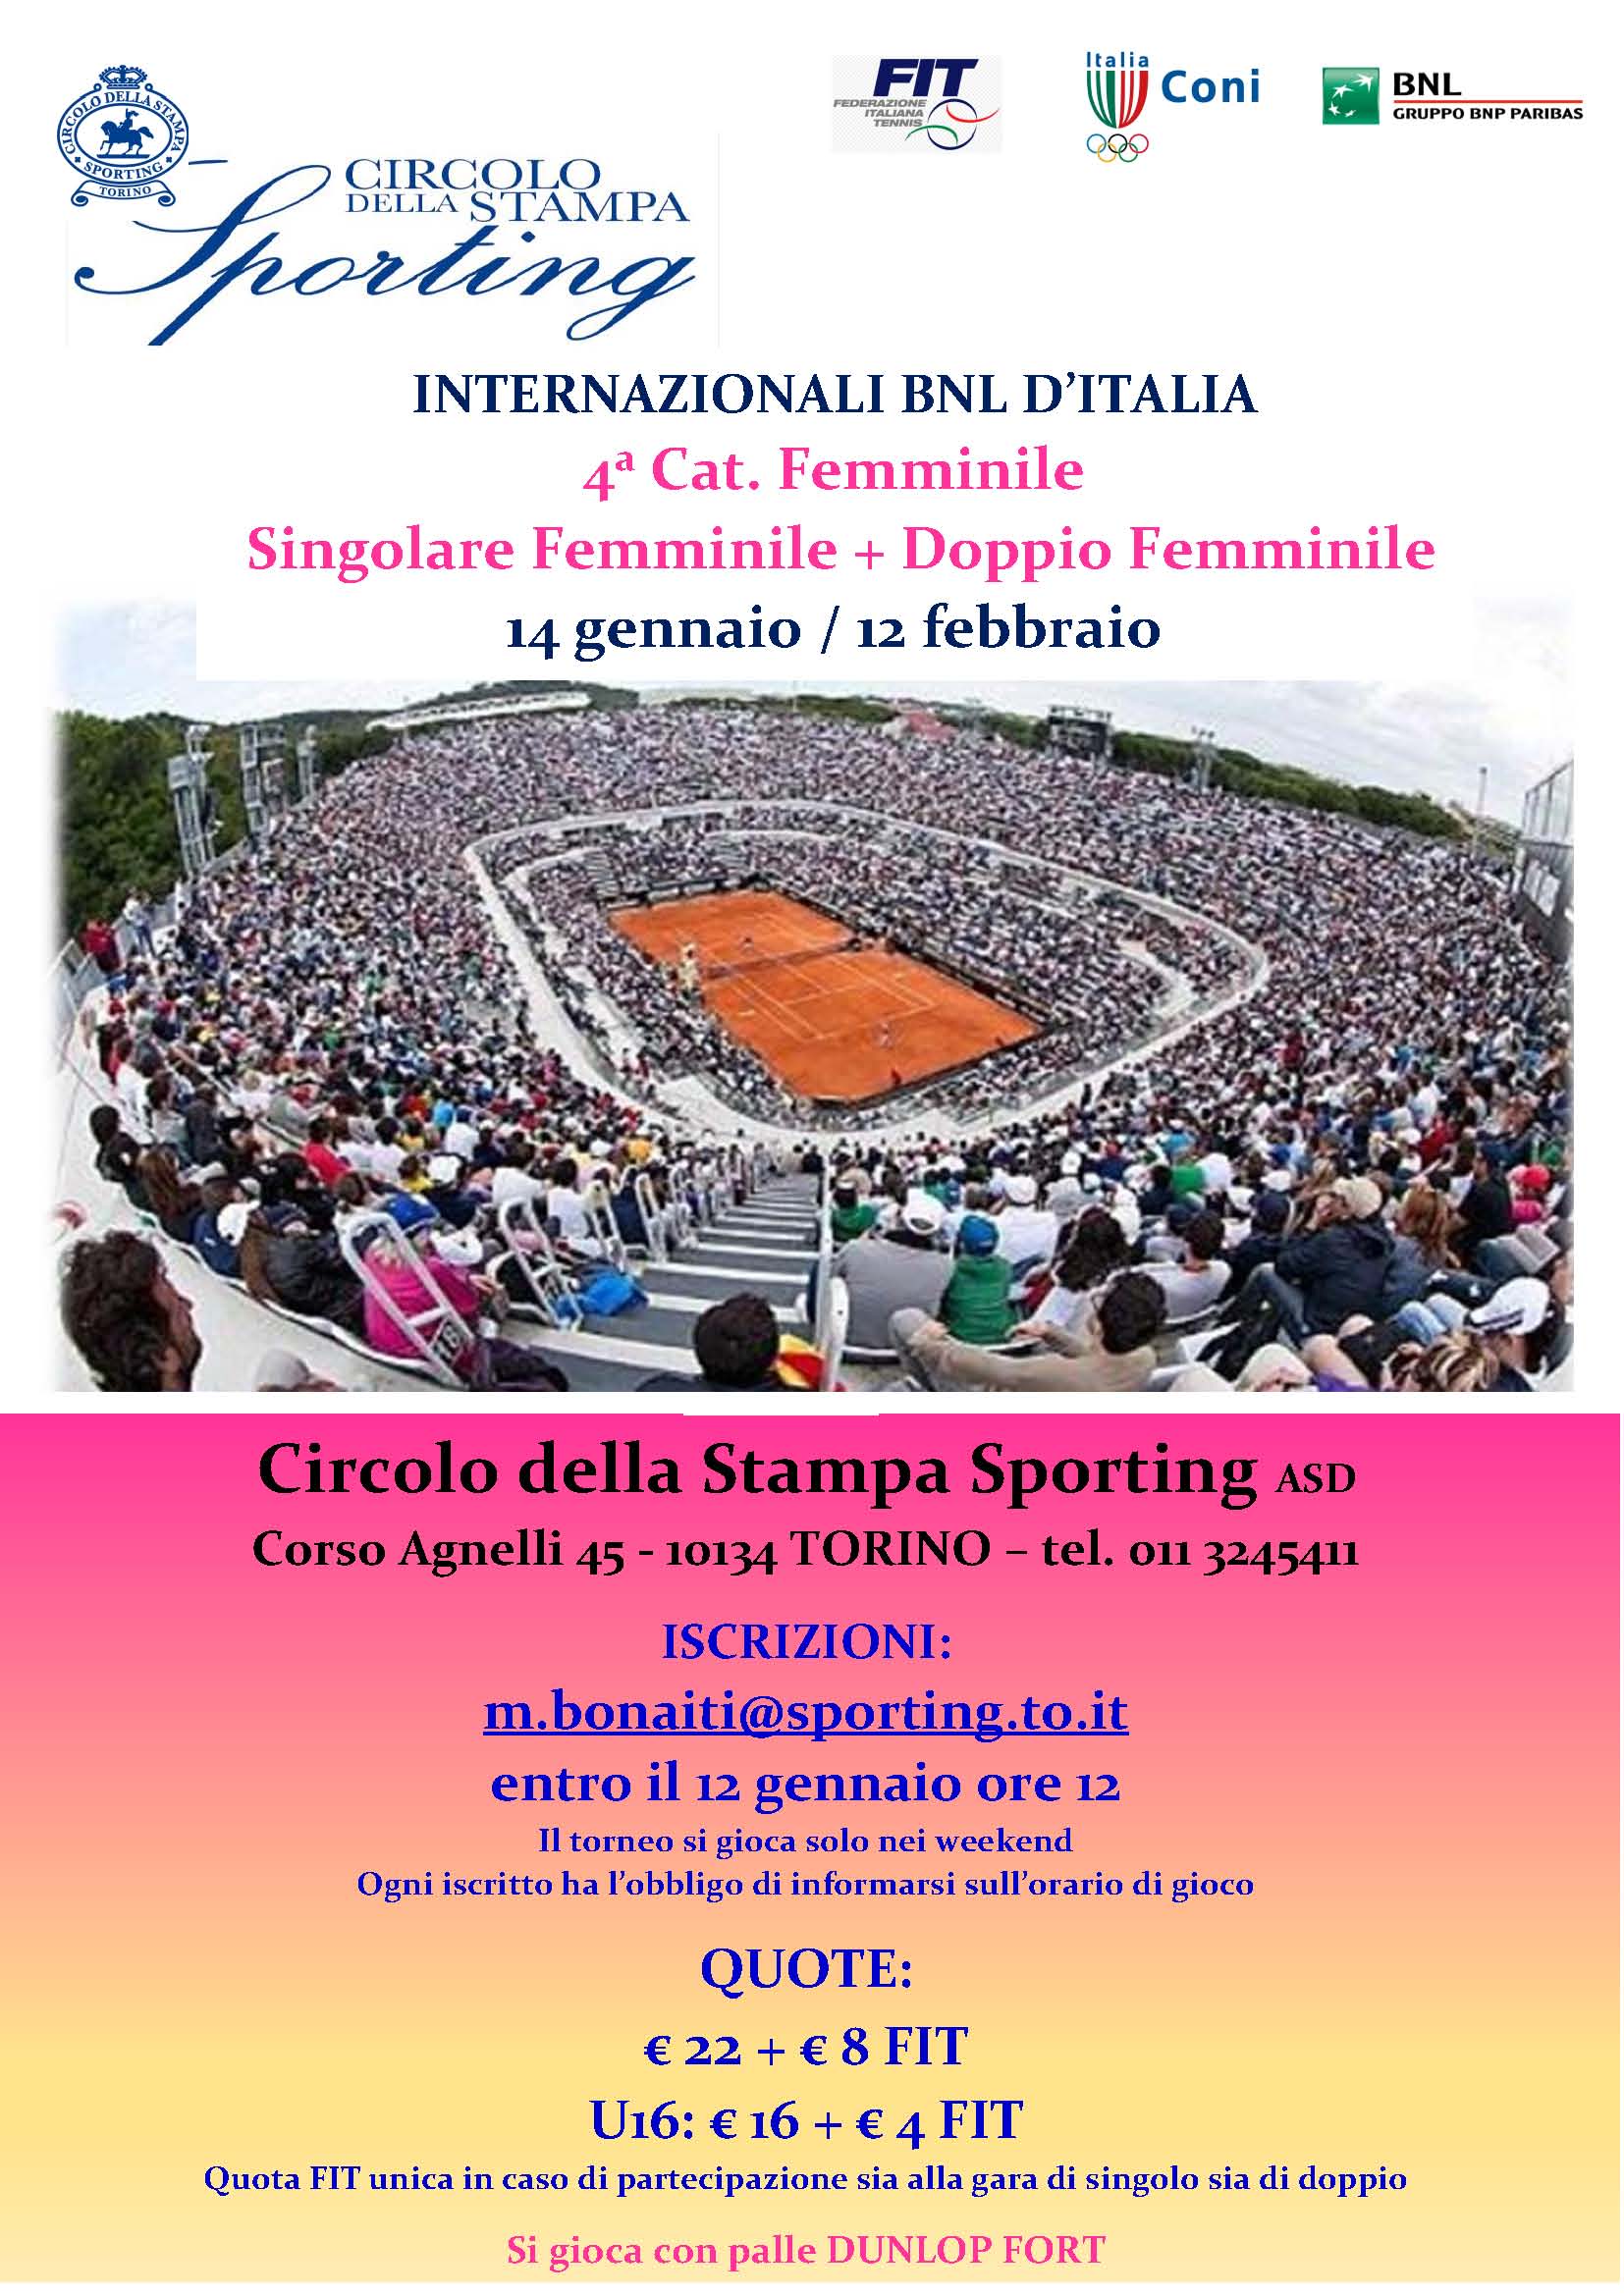 Internazionali BNL d'Italia, torneo di 4^ cat. femminile